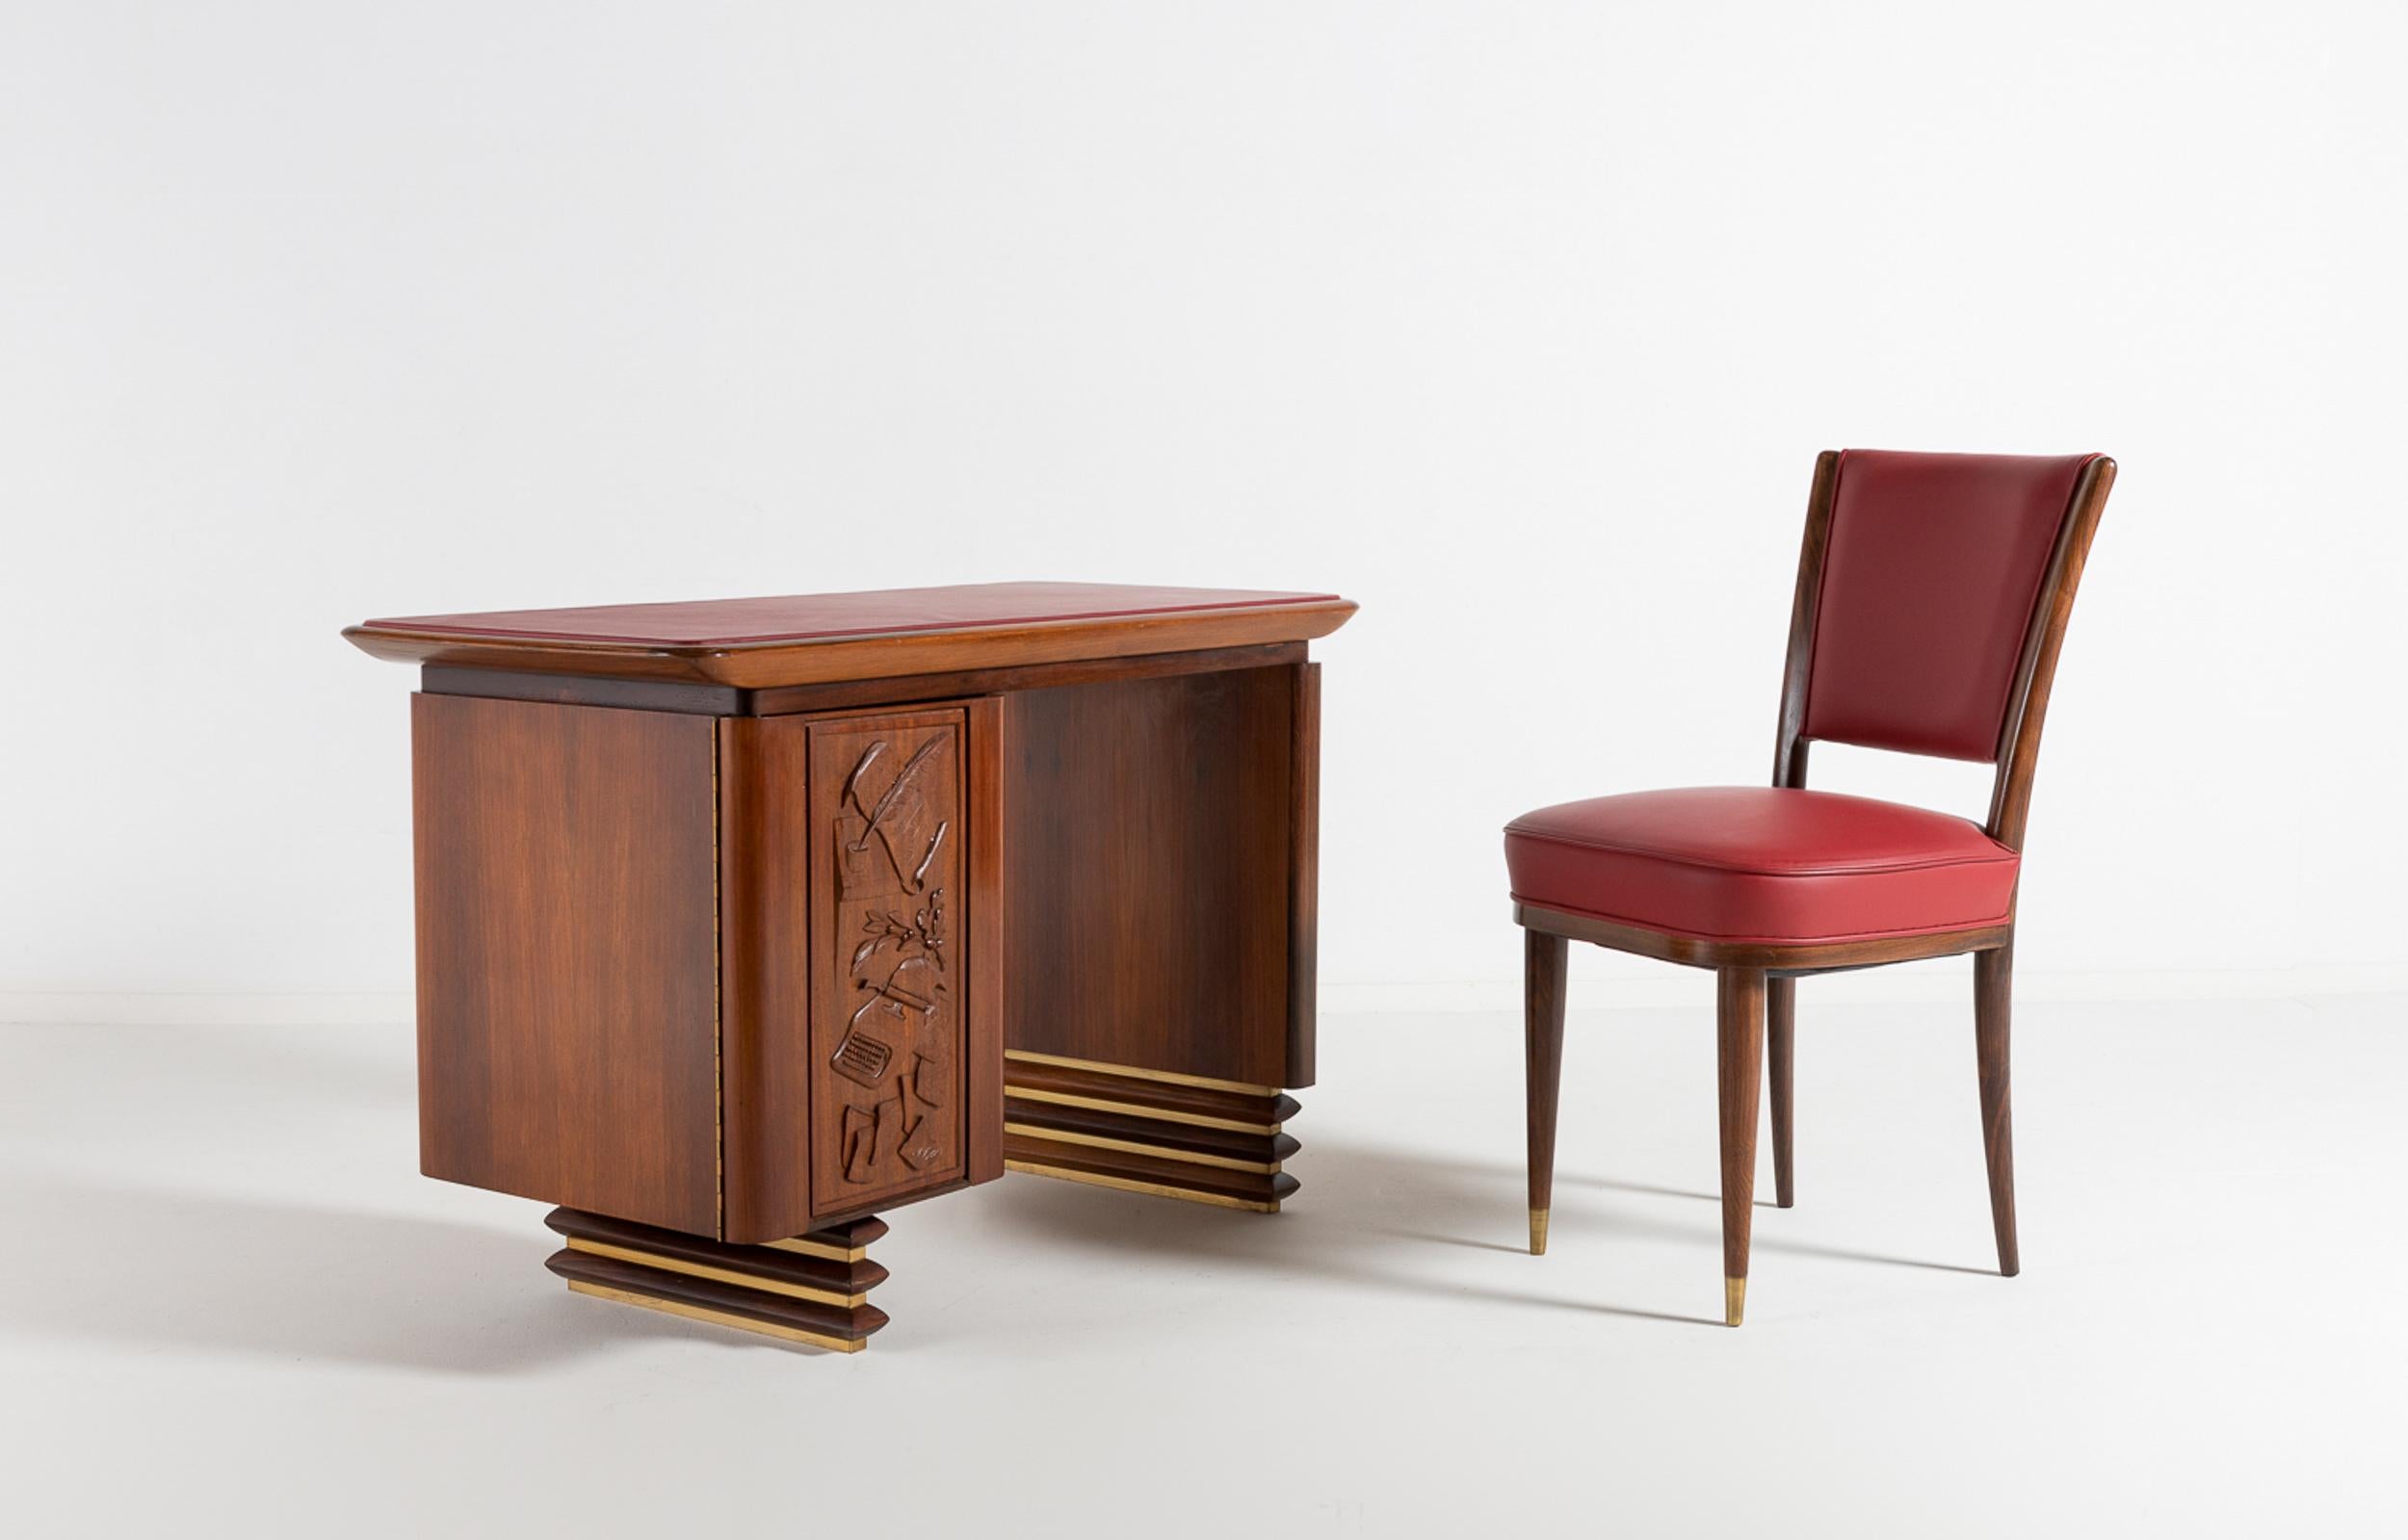 Ein prächtiger italienischer Schreibtisch aus Nussbaum und Palisander mit passendem Beistellstuhl aus Palisander und Leder, der 1960 für die Villa einer italienischen Führungskraft nach Maß angefertigt wurde. Der rechteckige Deckel ist mit dem roten